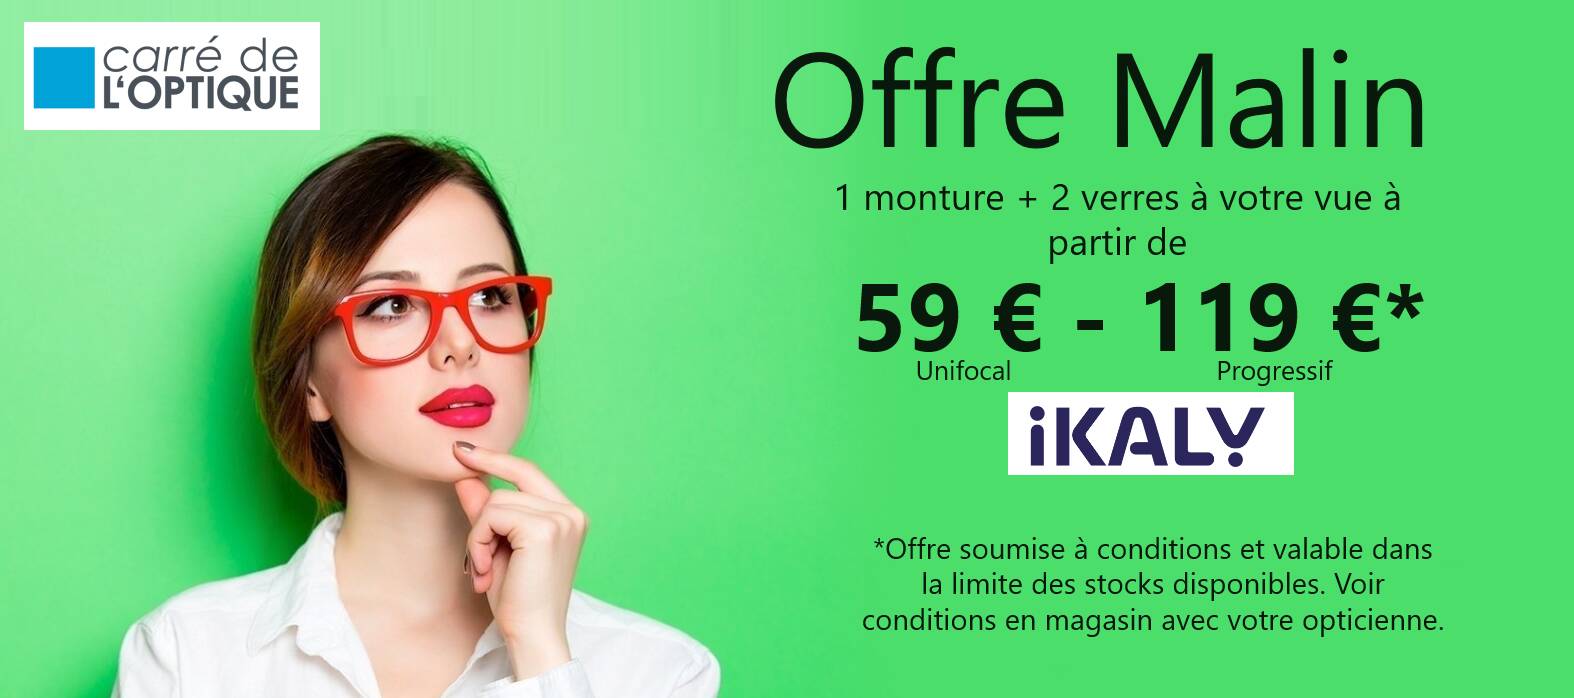 Actualité optique opticien : OFFRE MALIN 59€-119€